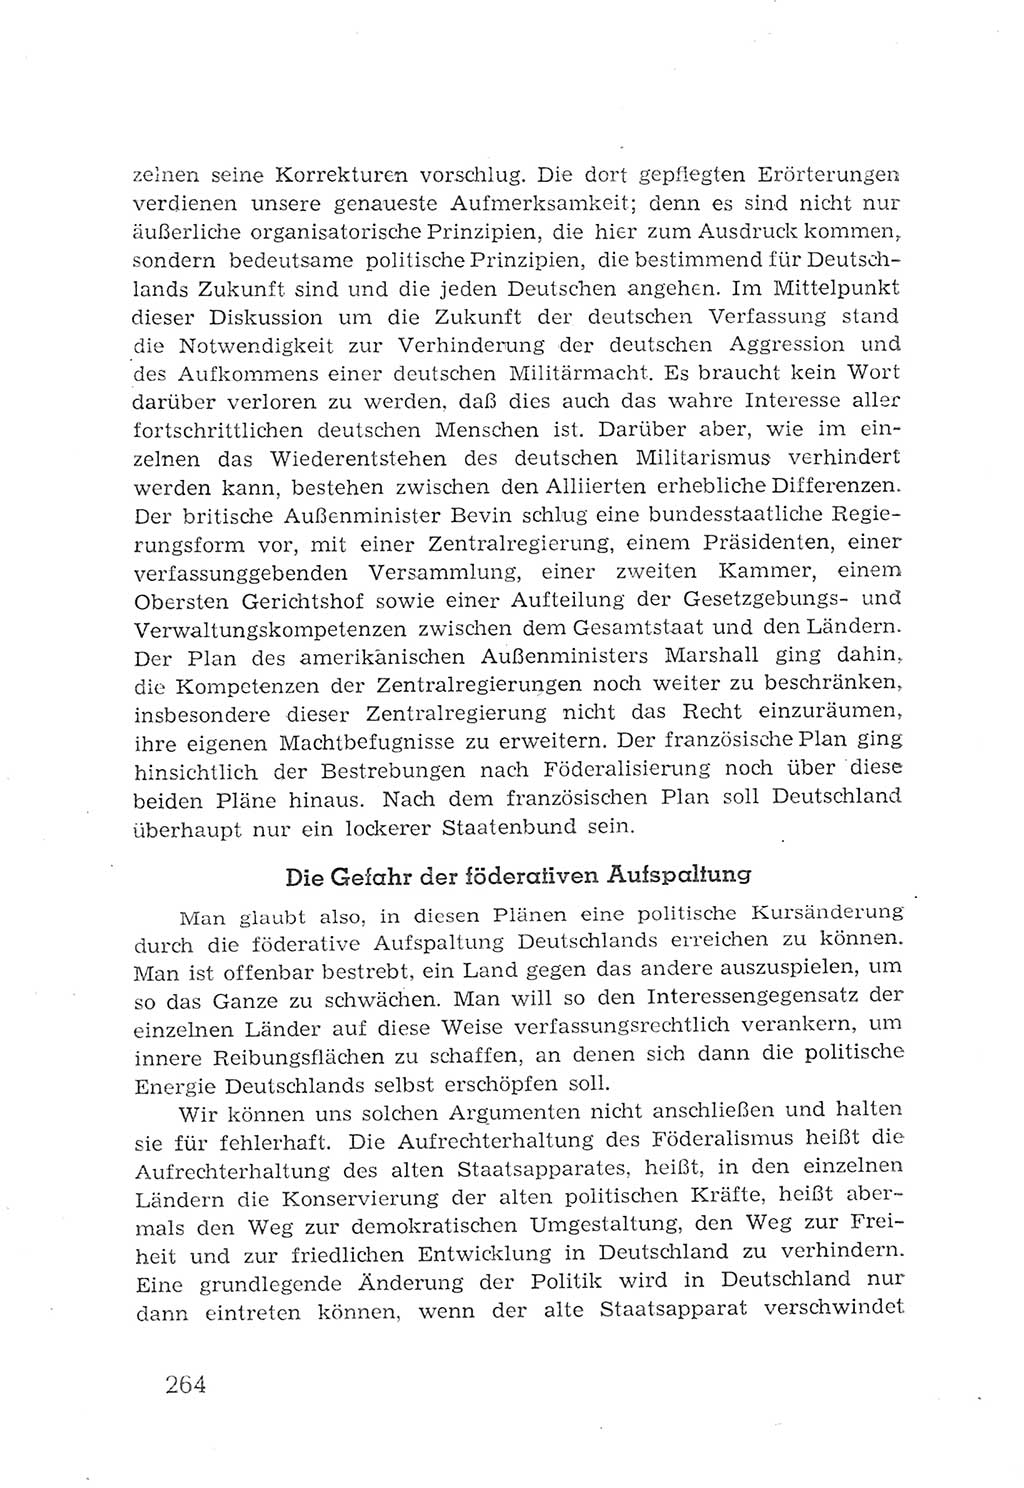 Protokoll der Verhandlungen des 2. Parteitages der Sozialistischen Einheitspartei Deutschlands (SED) [Sowjetische Besatzungszone (SBZ) Deutschlands] 1947, Seite 264 (Prot. Verh. 2. PT SED SBZ Dtl. 1947, S. 264)